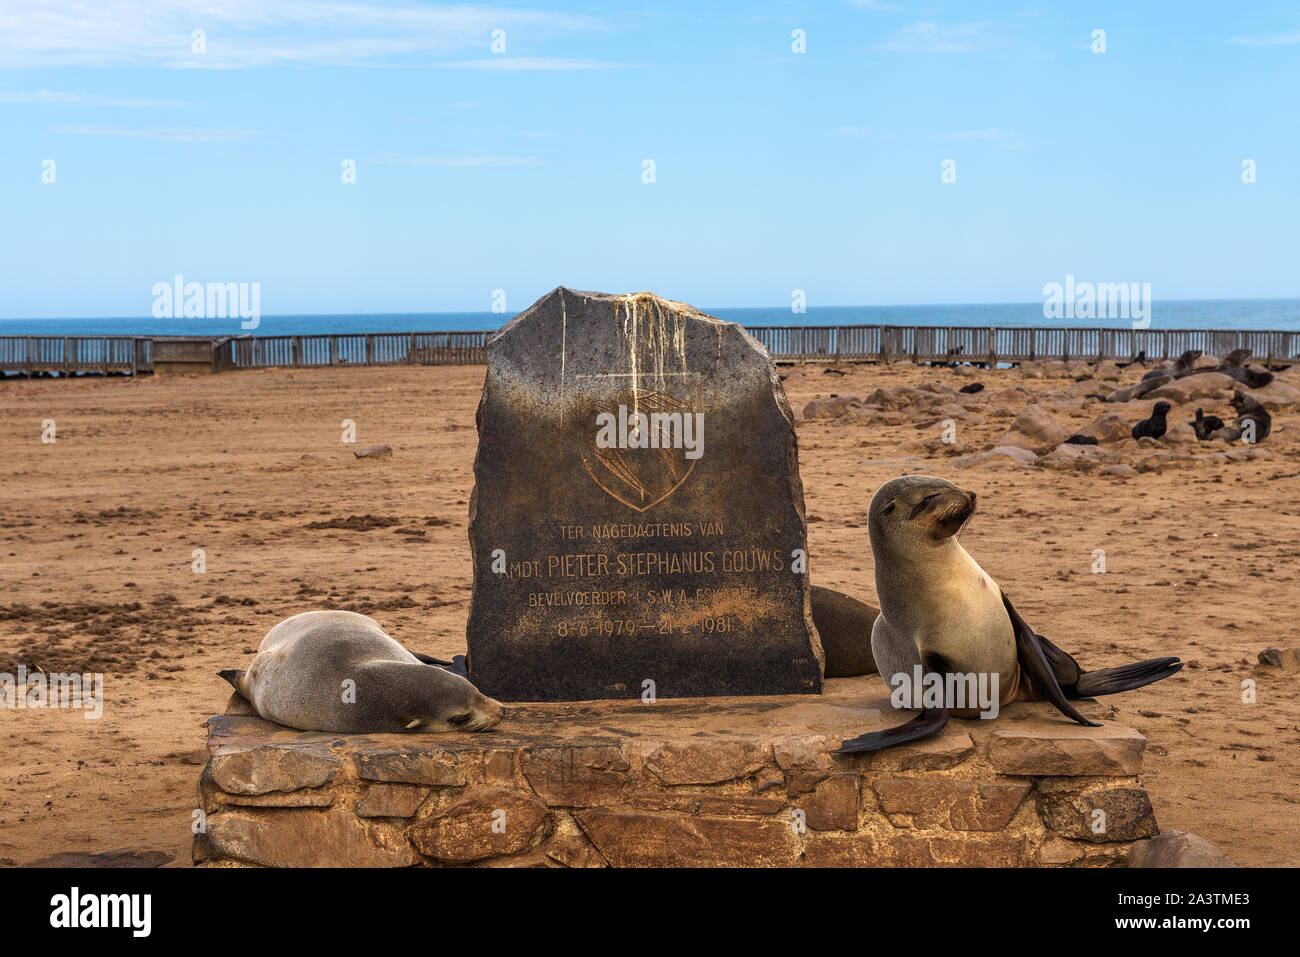 Les phoques à la Cape Cross Seal Reserve en Skeleton Coast, Namibie Banque D'Images